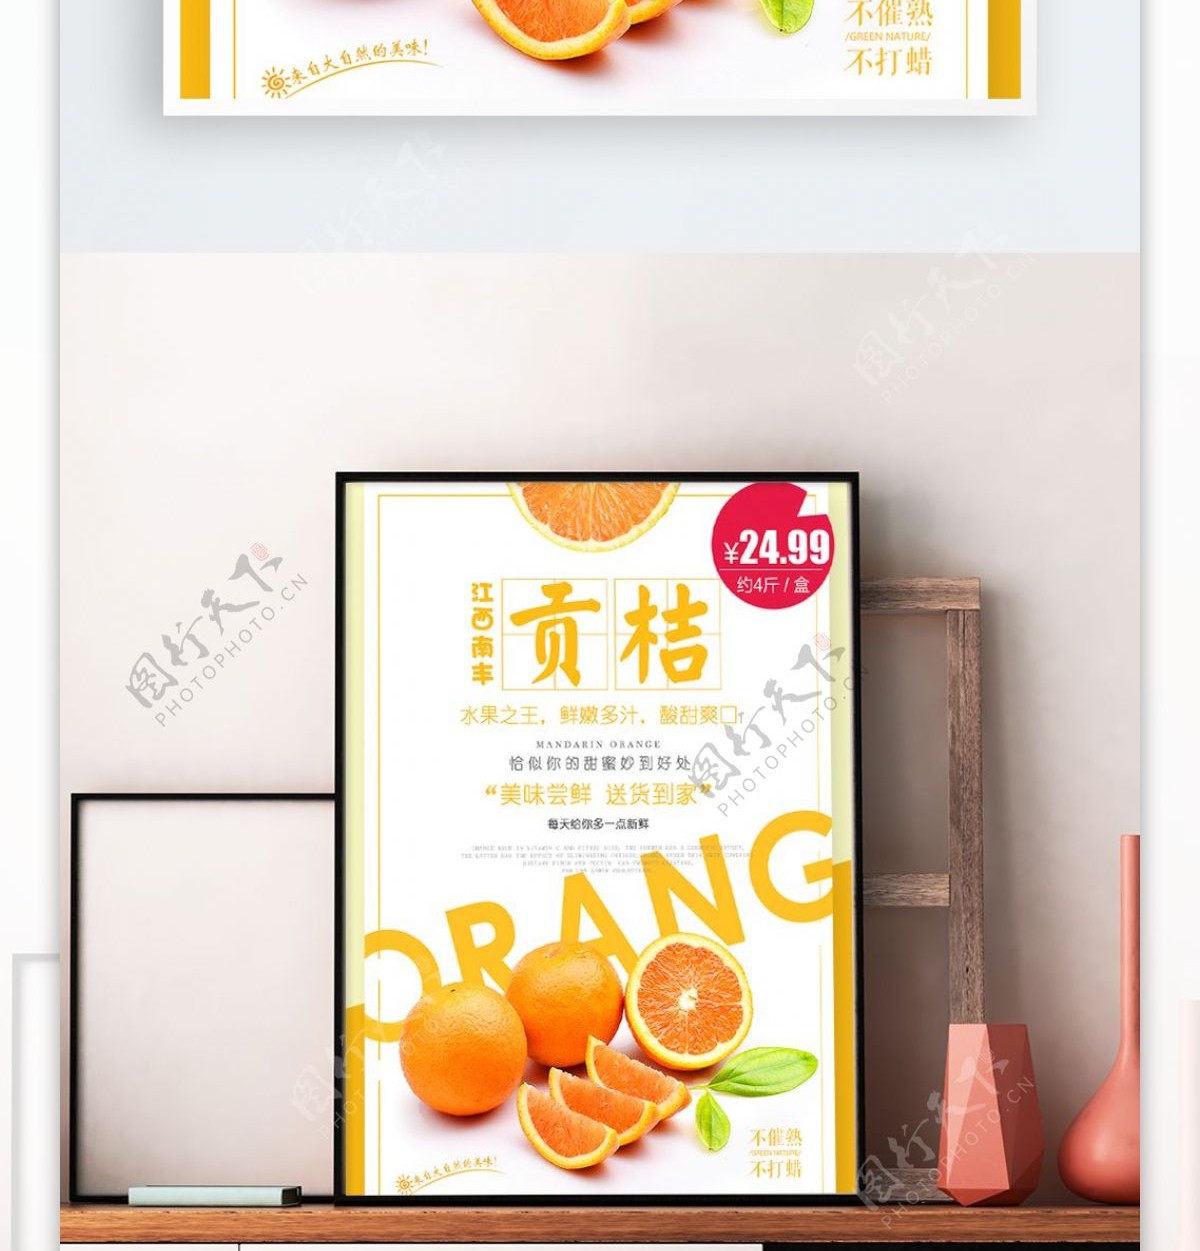 江西南丰贡桔橘子健康水果促销商品海报